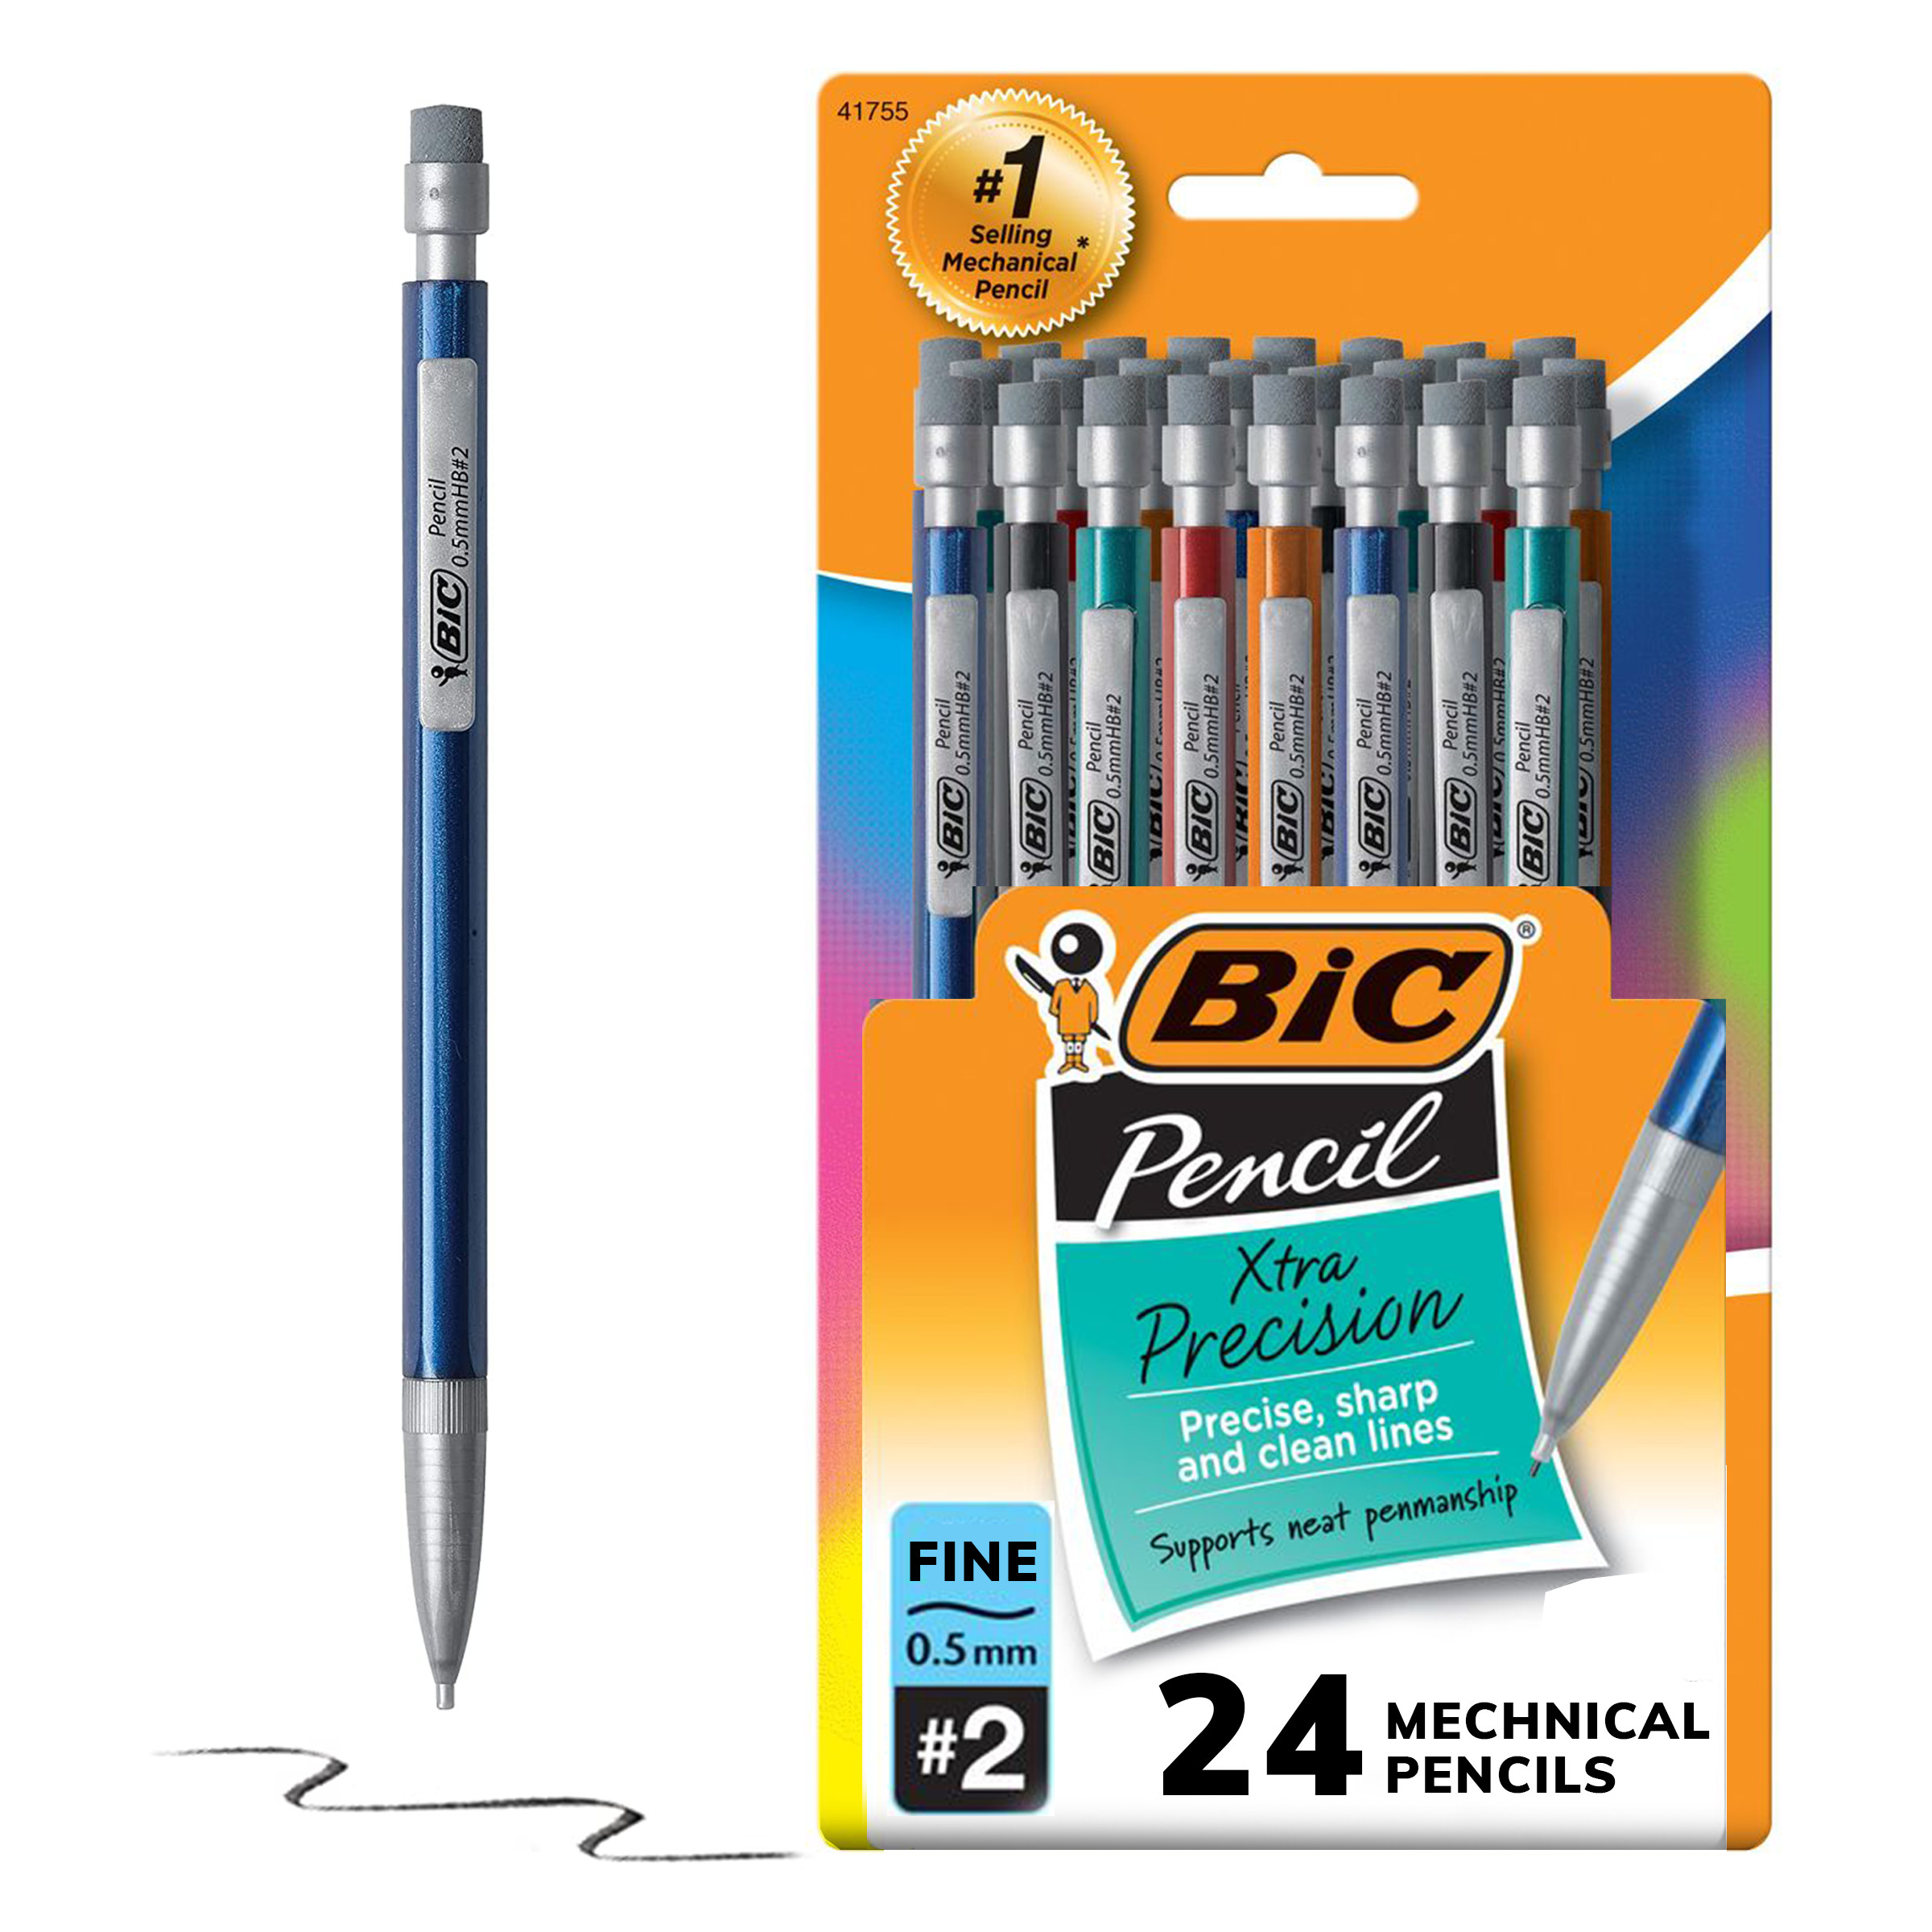 BIC Xtra-Precision Mechanical Pencil, Metallic Barrels, #2 Pencil, 24 Count - image 1 of 12